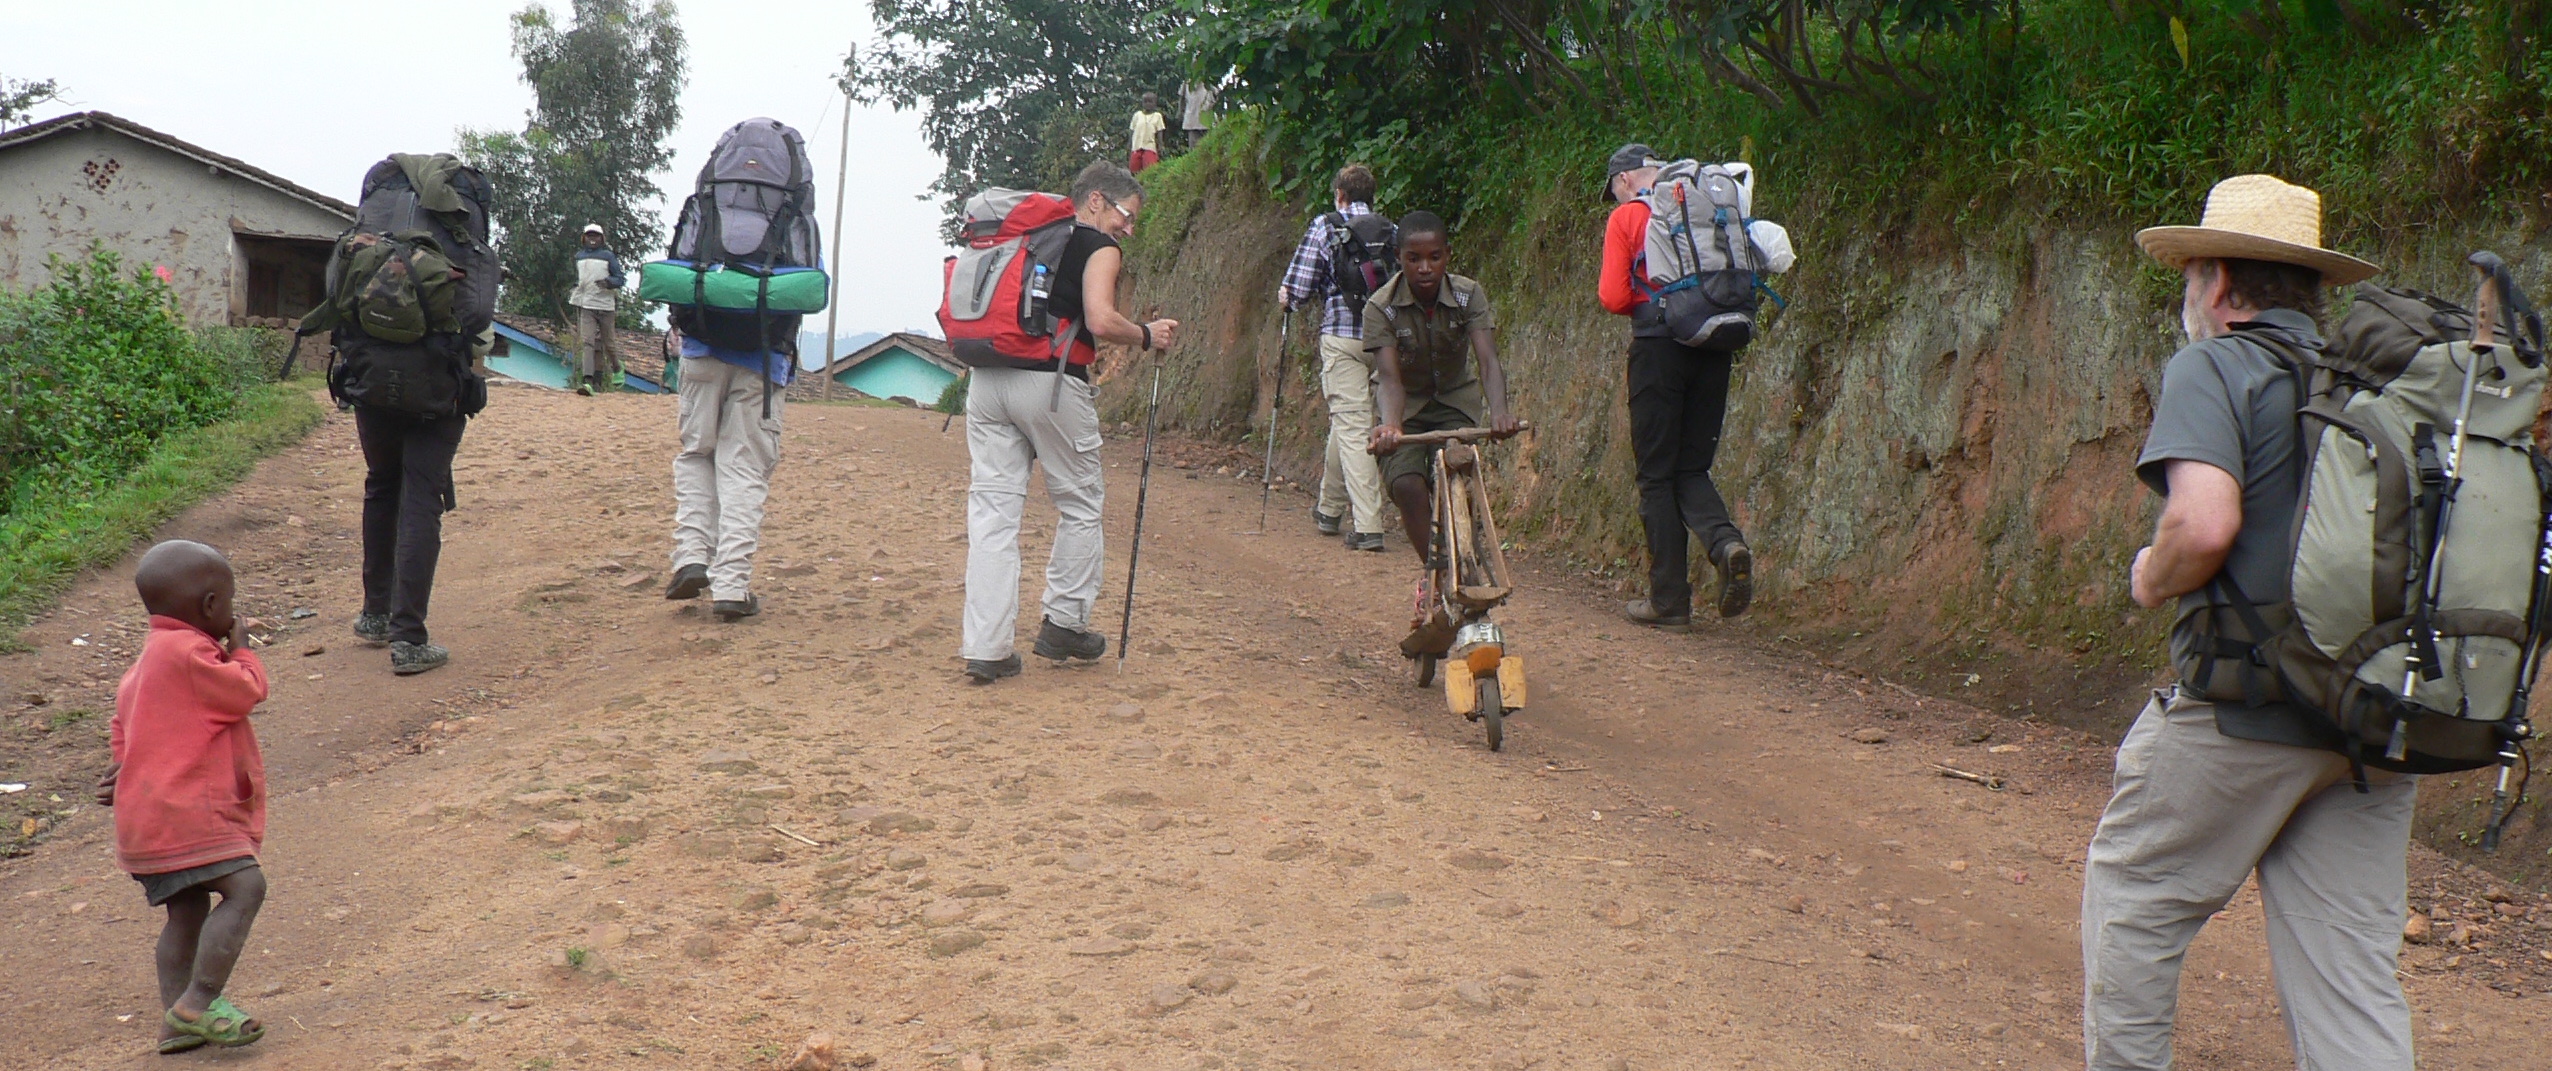 Congo Nile Trail hike 